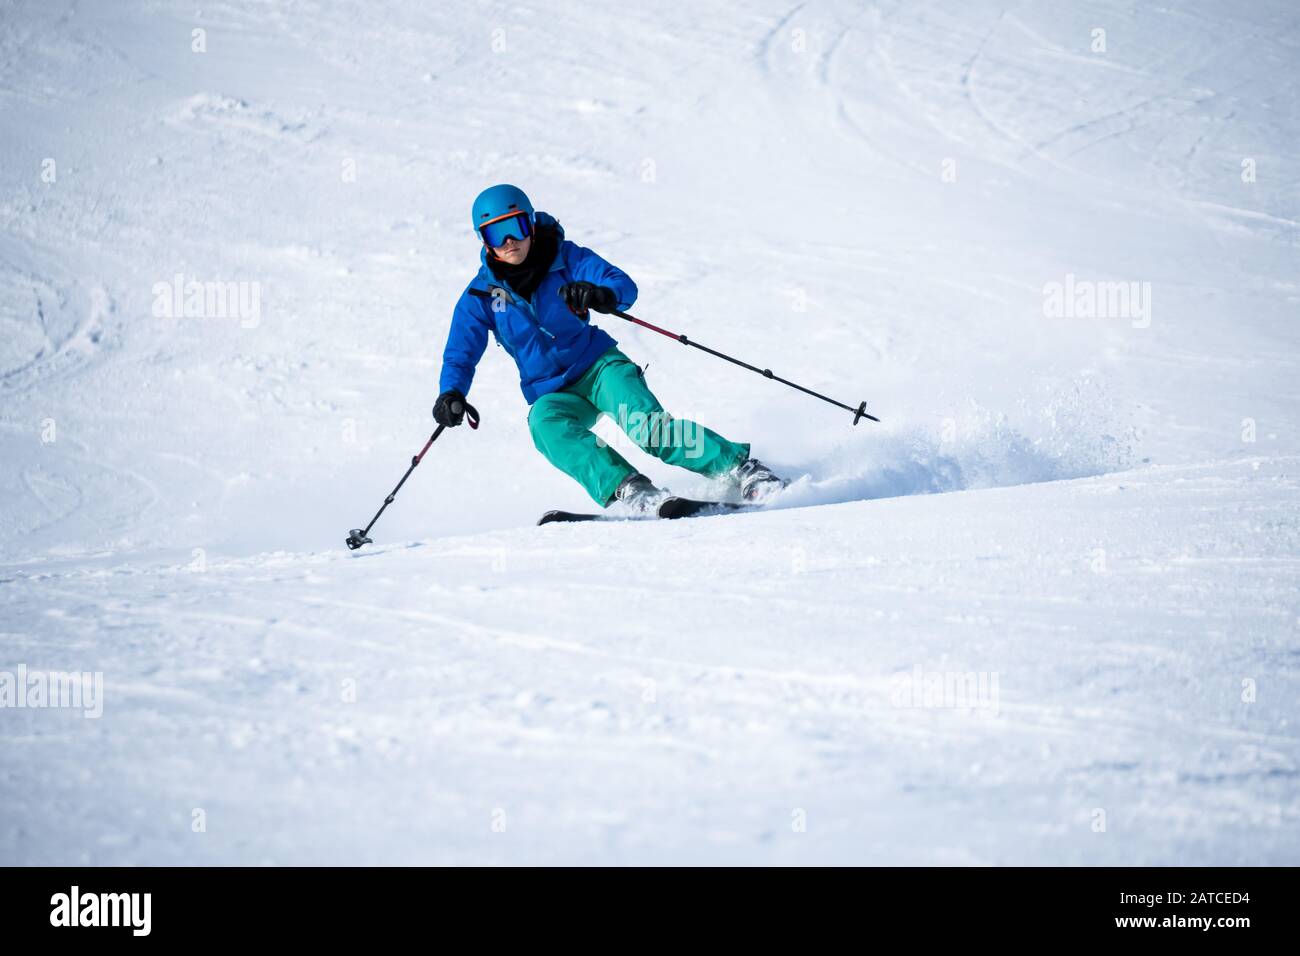 Woman skiing, Zauchensee ski resort, Salzburg, Austria Stock Photo